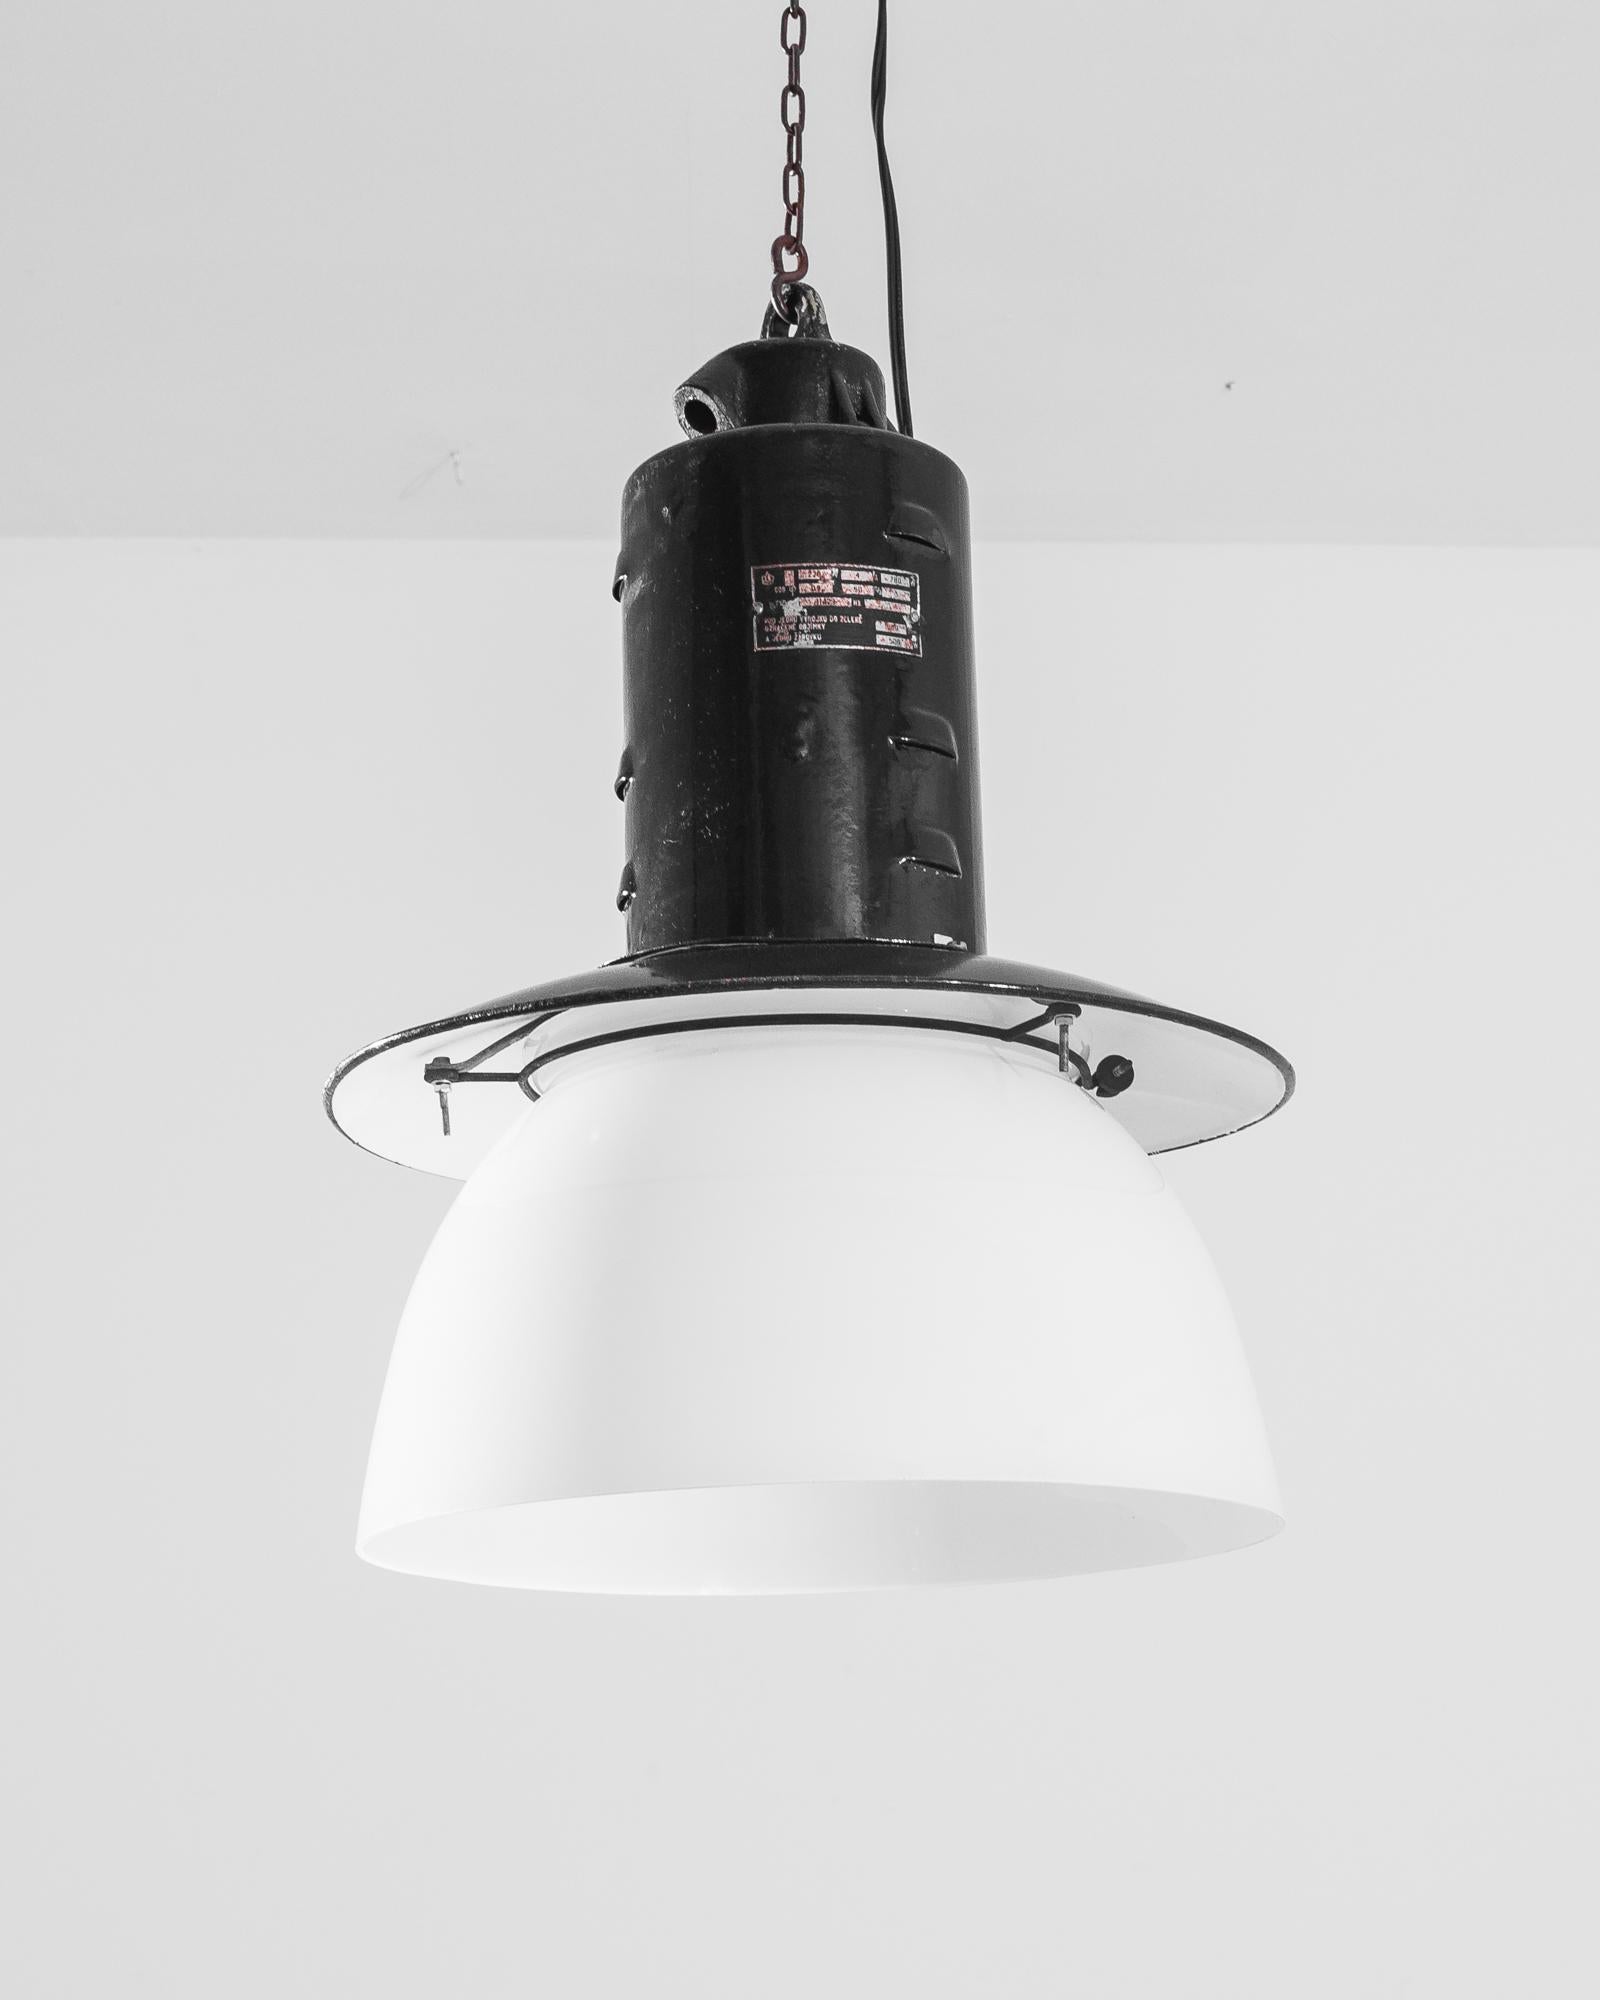 Lampe industrielle en métal provenant de la République tchèque, produite vers 1930. Cylindre en métal noir suspendu au plafond par une chaîne, s'épanouit en un abat-jour recouvrant un bol en verre blanc. Cette lampe vintage est une stalactite